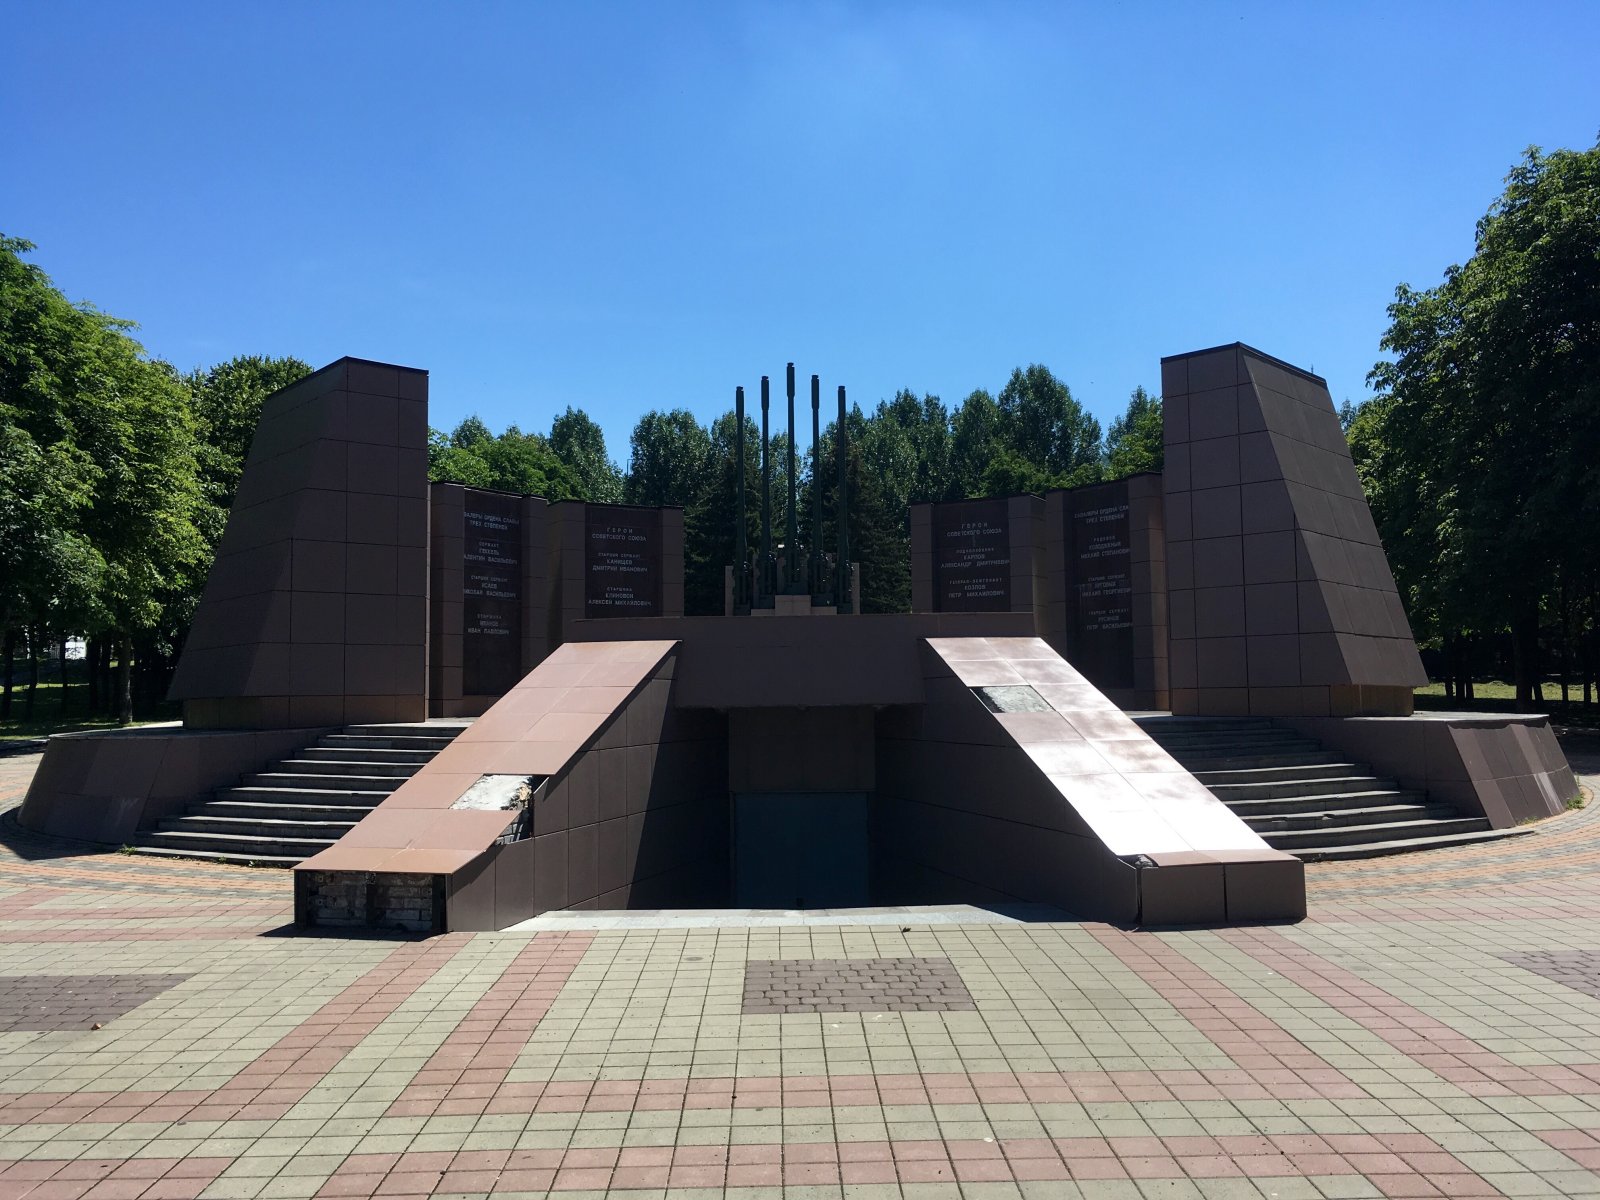 Мемориалы великой отечественной войны в россии